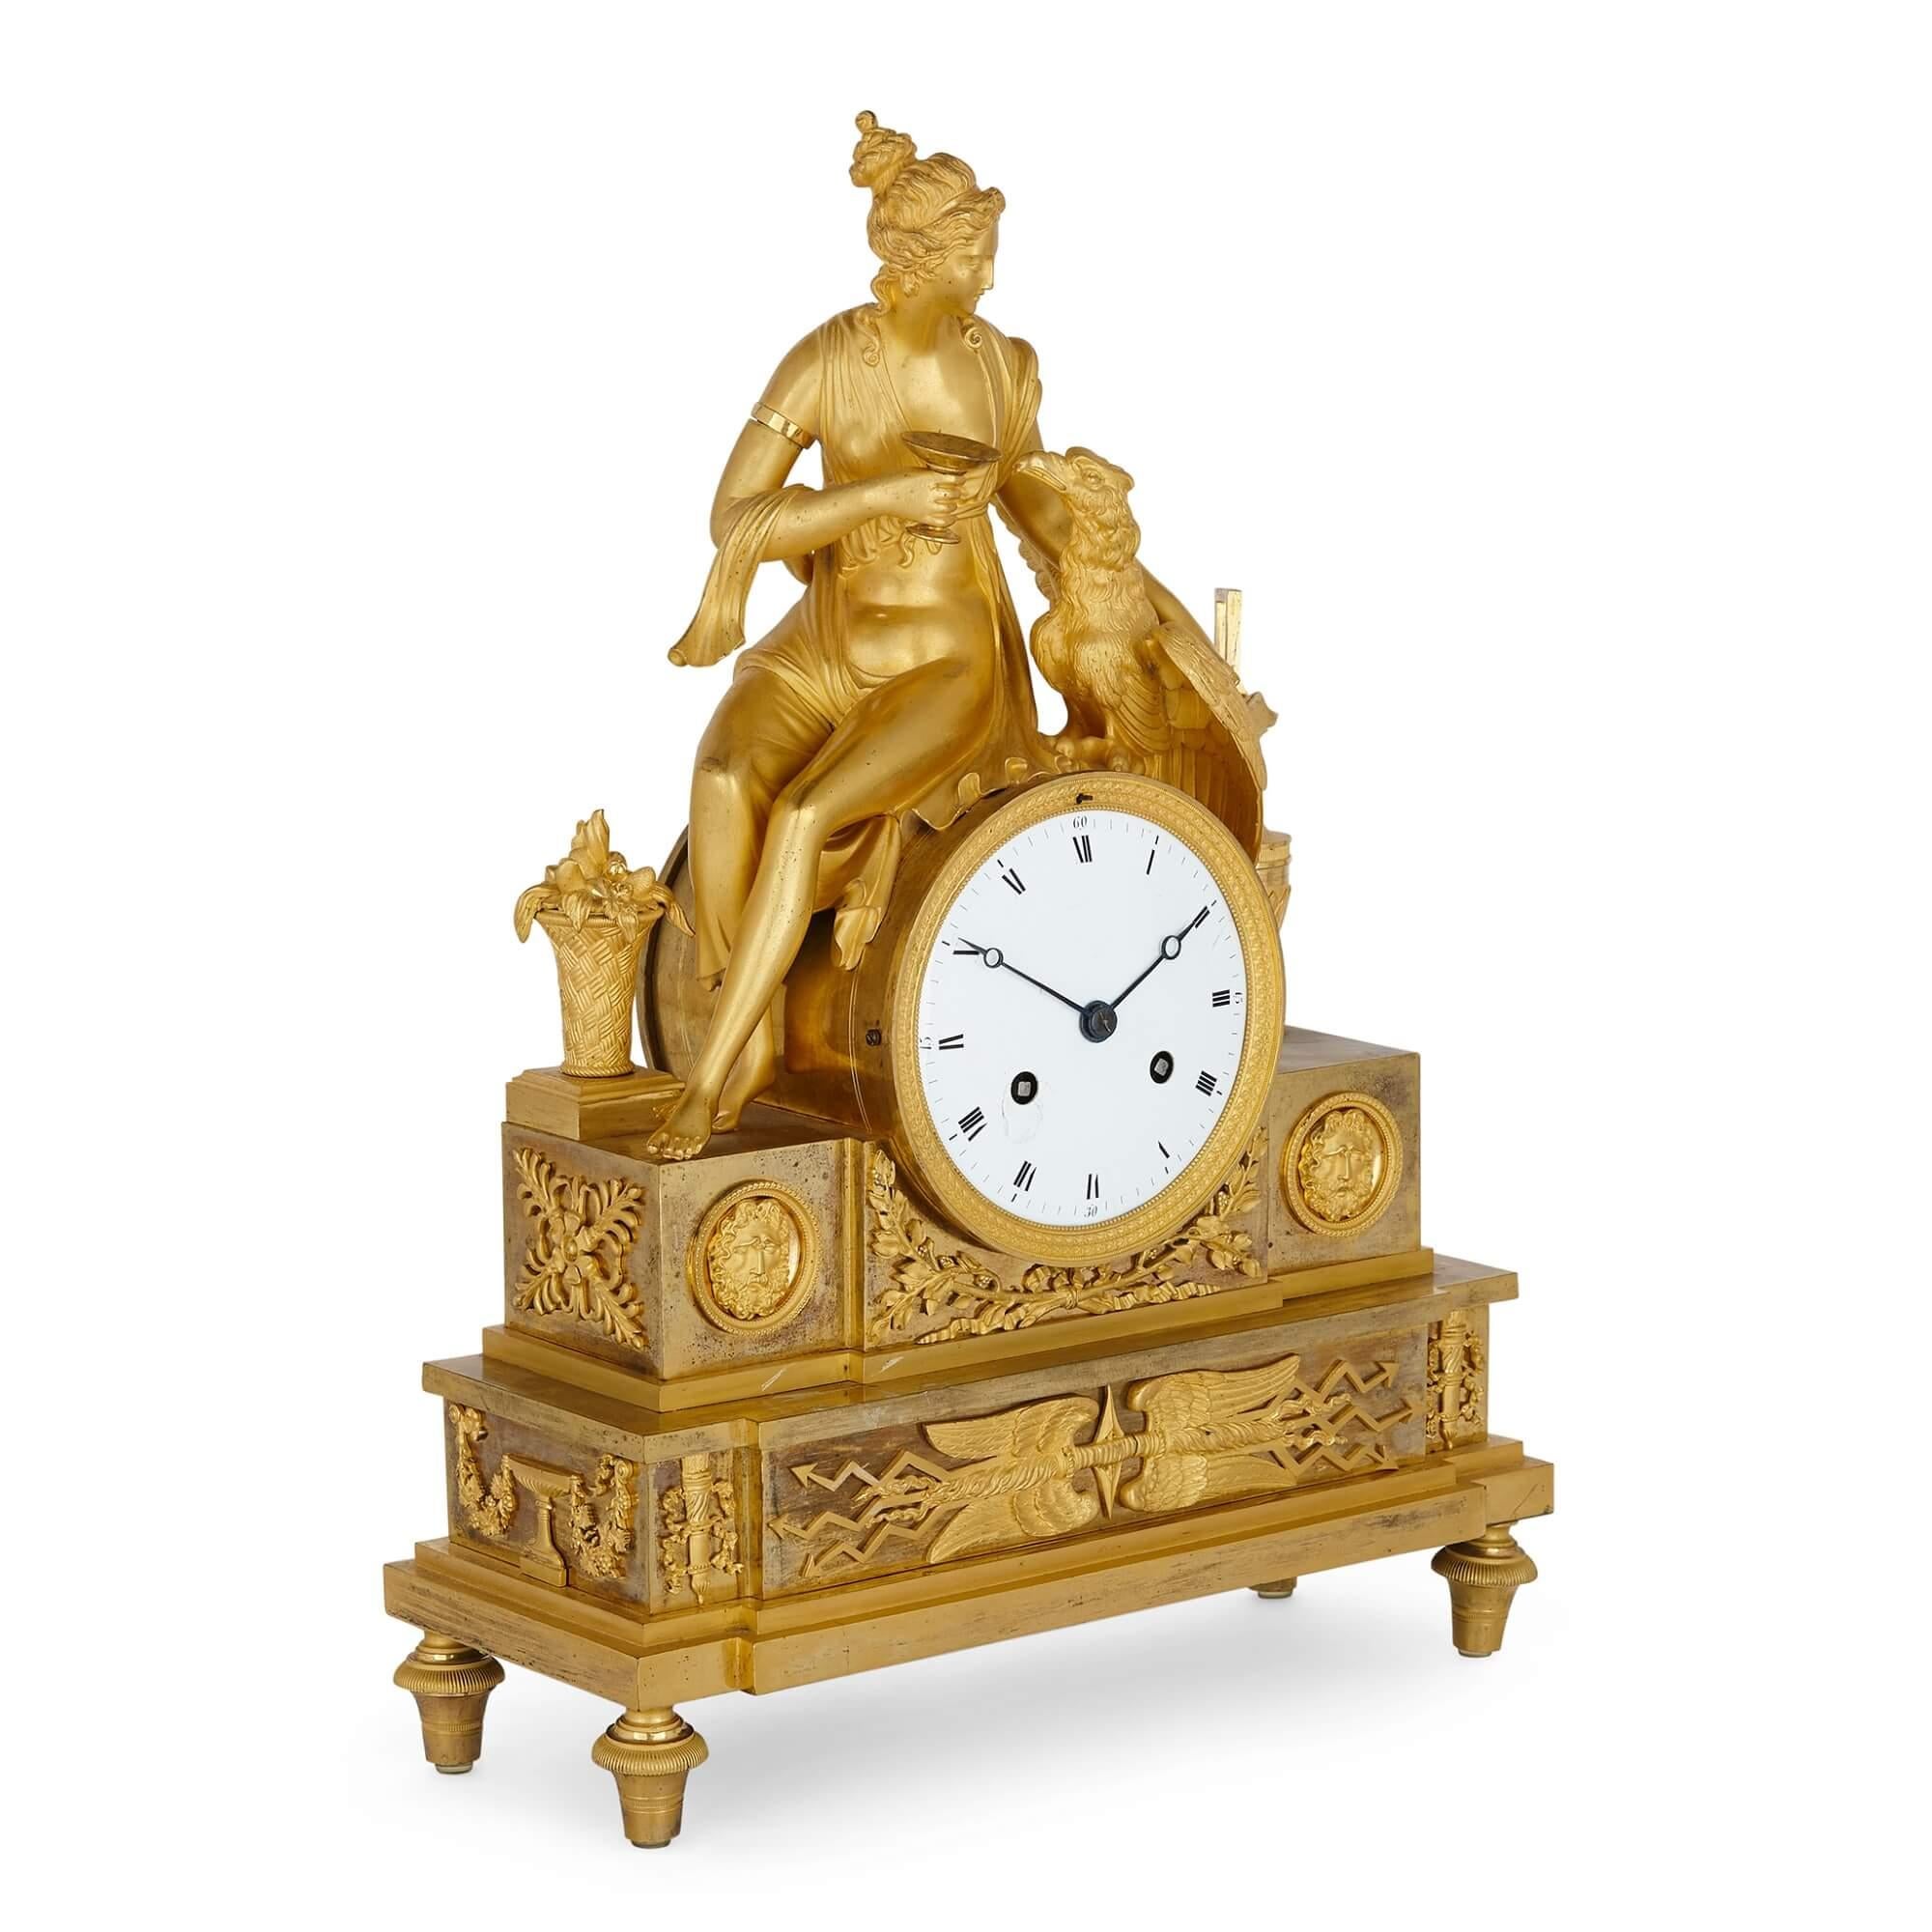 Cette belle horloge de cheminée de style néoclassique date du début du 19e siècle. L'horloge est coulée en bronze doré et présente la figure surmontante d'Asteria assise avec la figure d'un aigle, qui est Zeus transformé. L'histoire est tirée de la